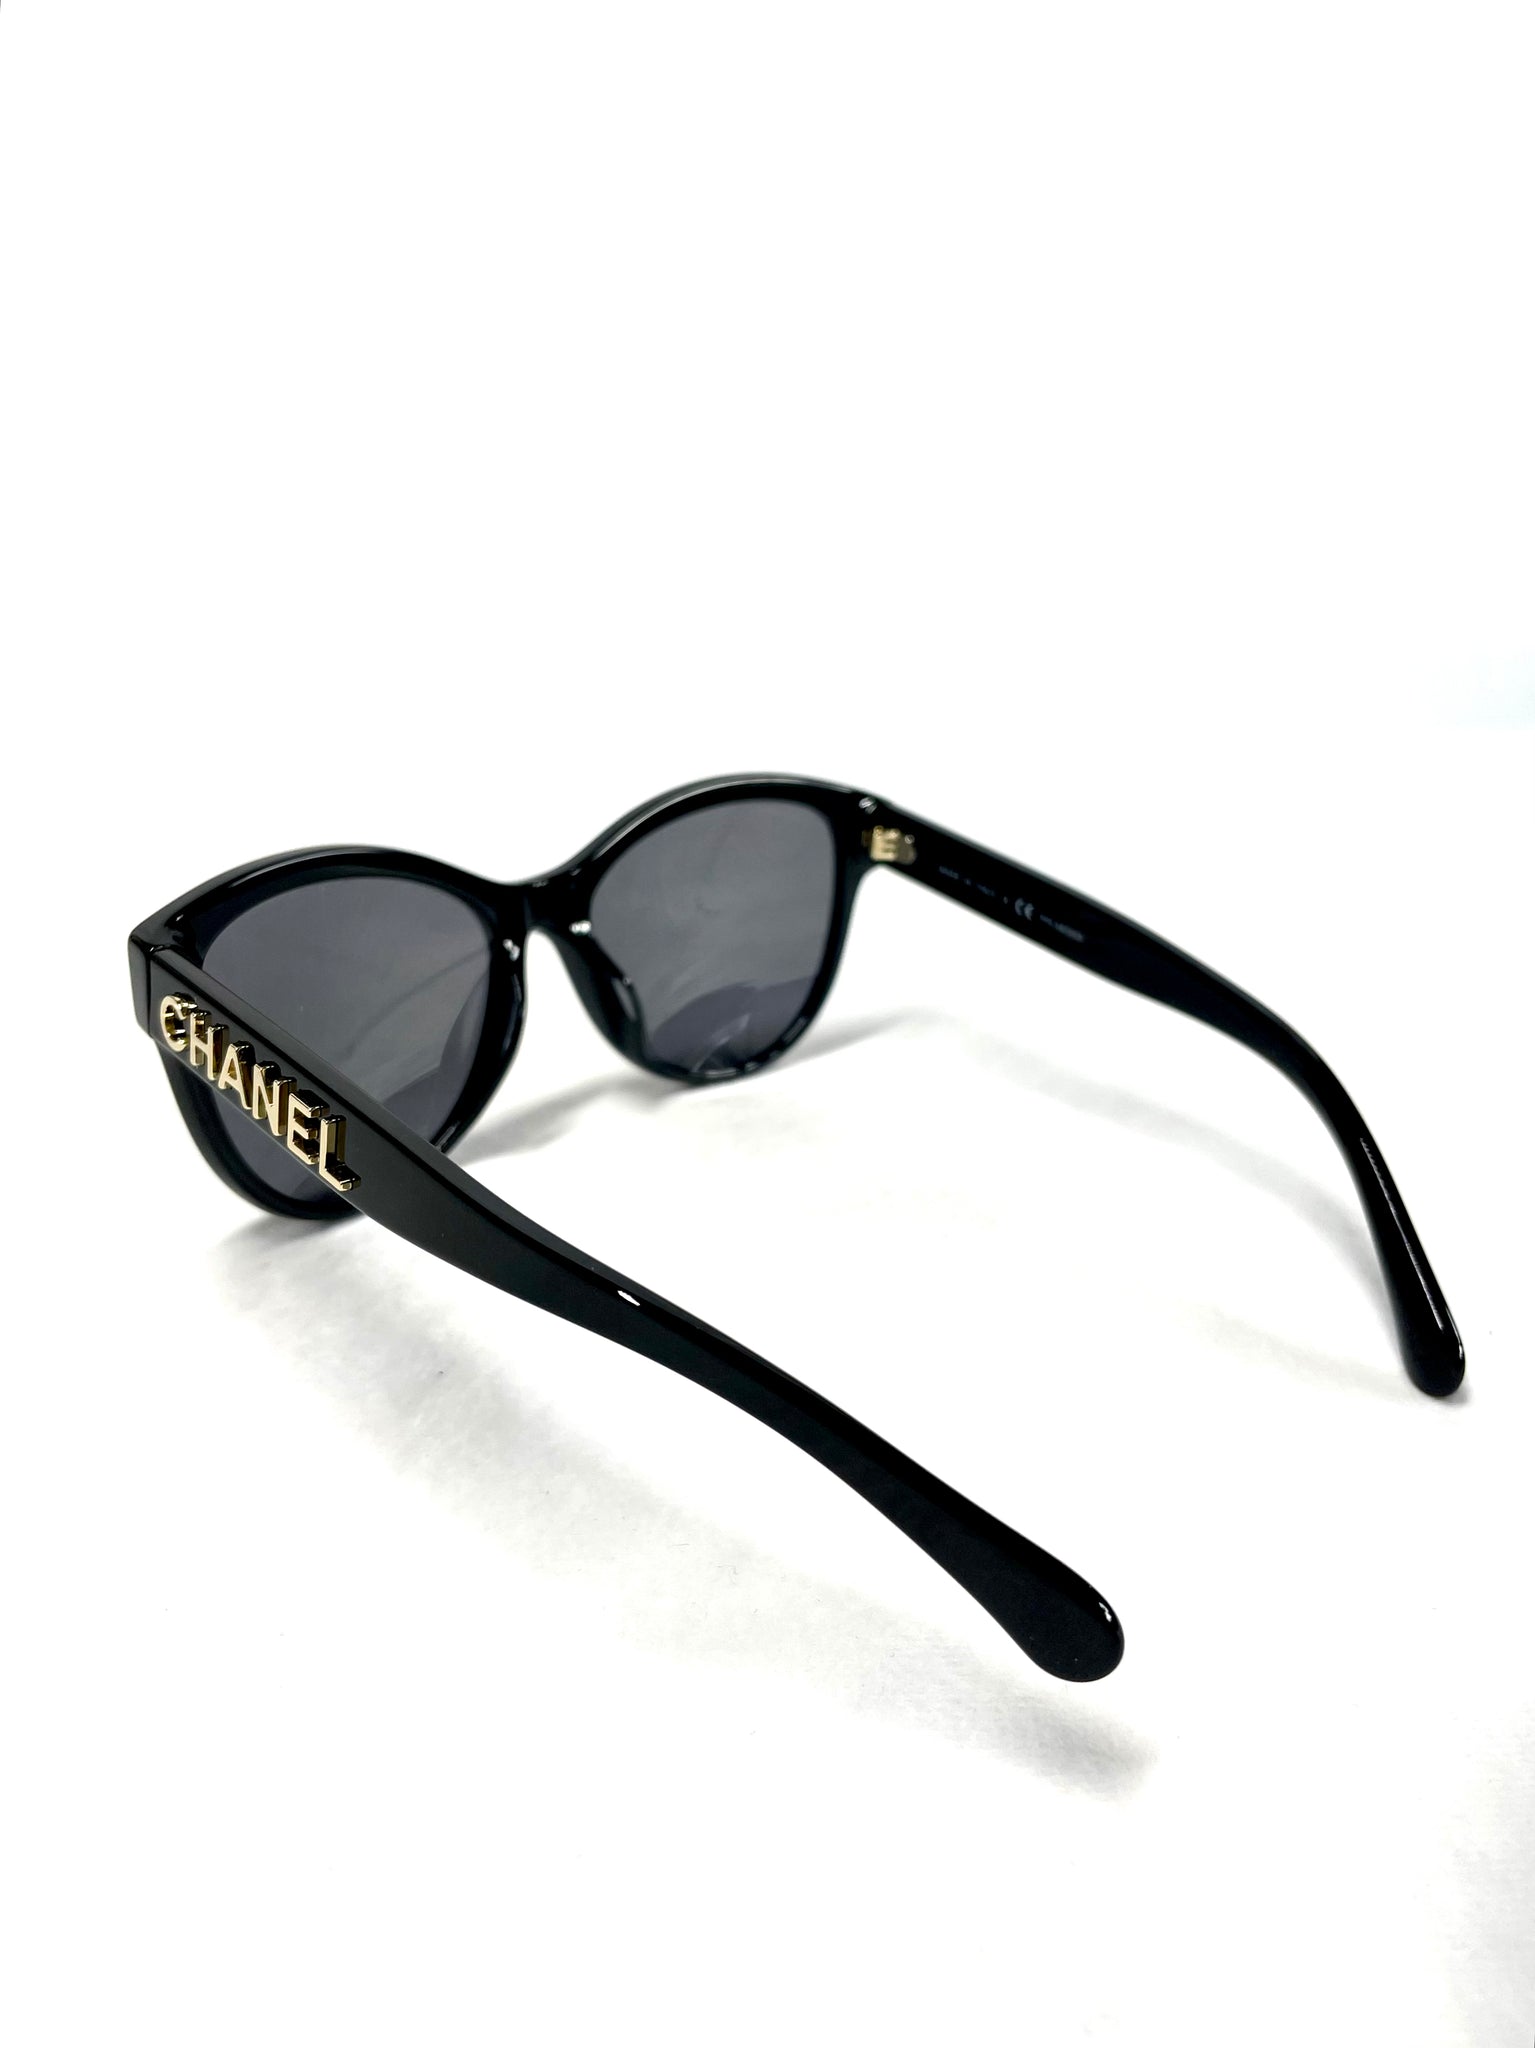 Chanel Classic Sunglasses *Brand New* – UNIKONCEPT